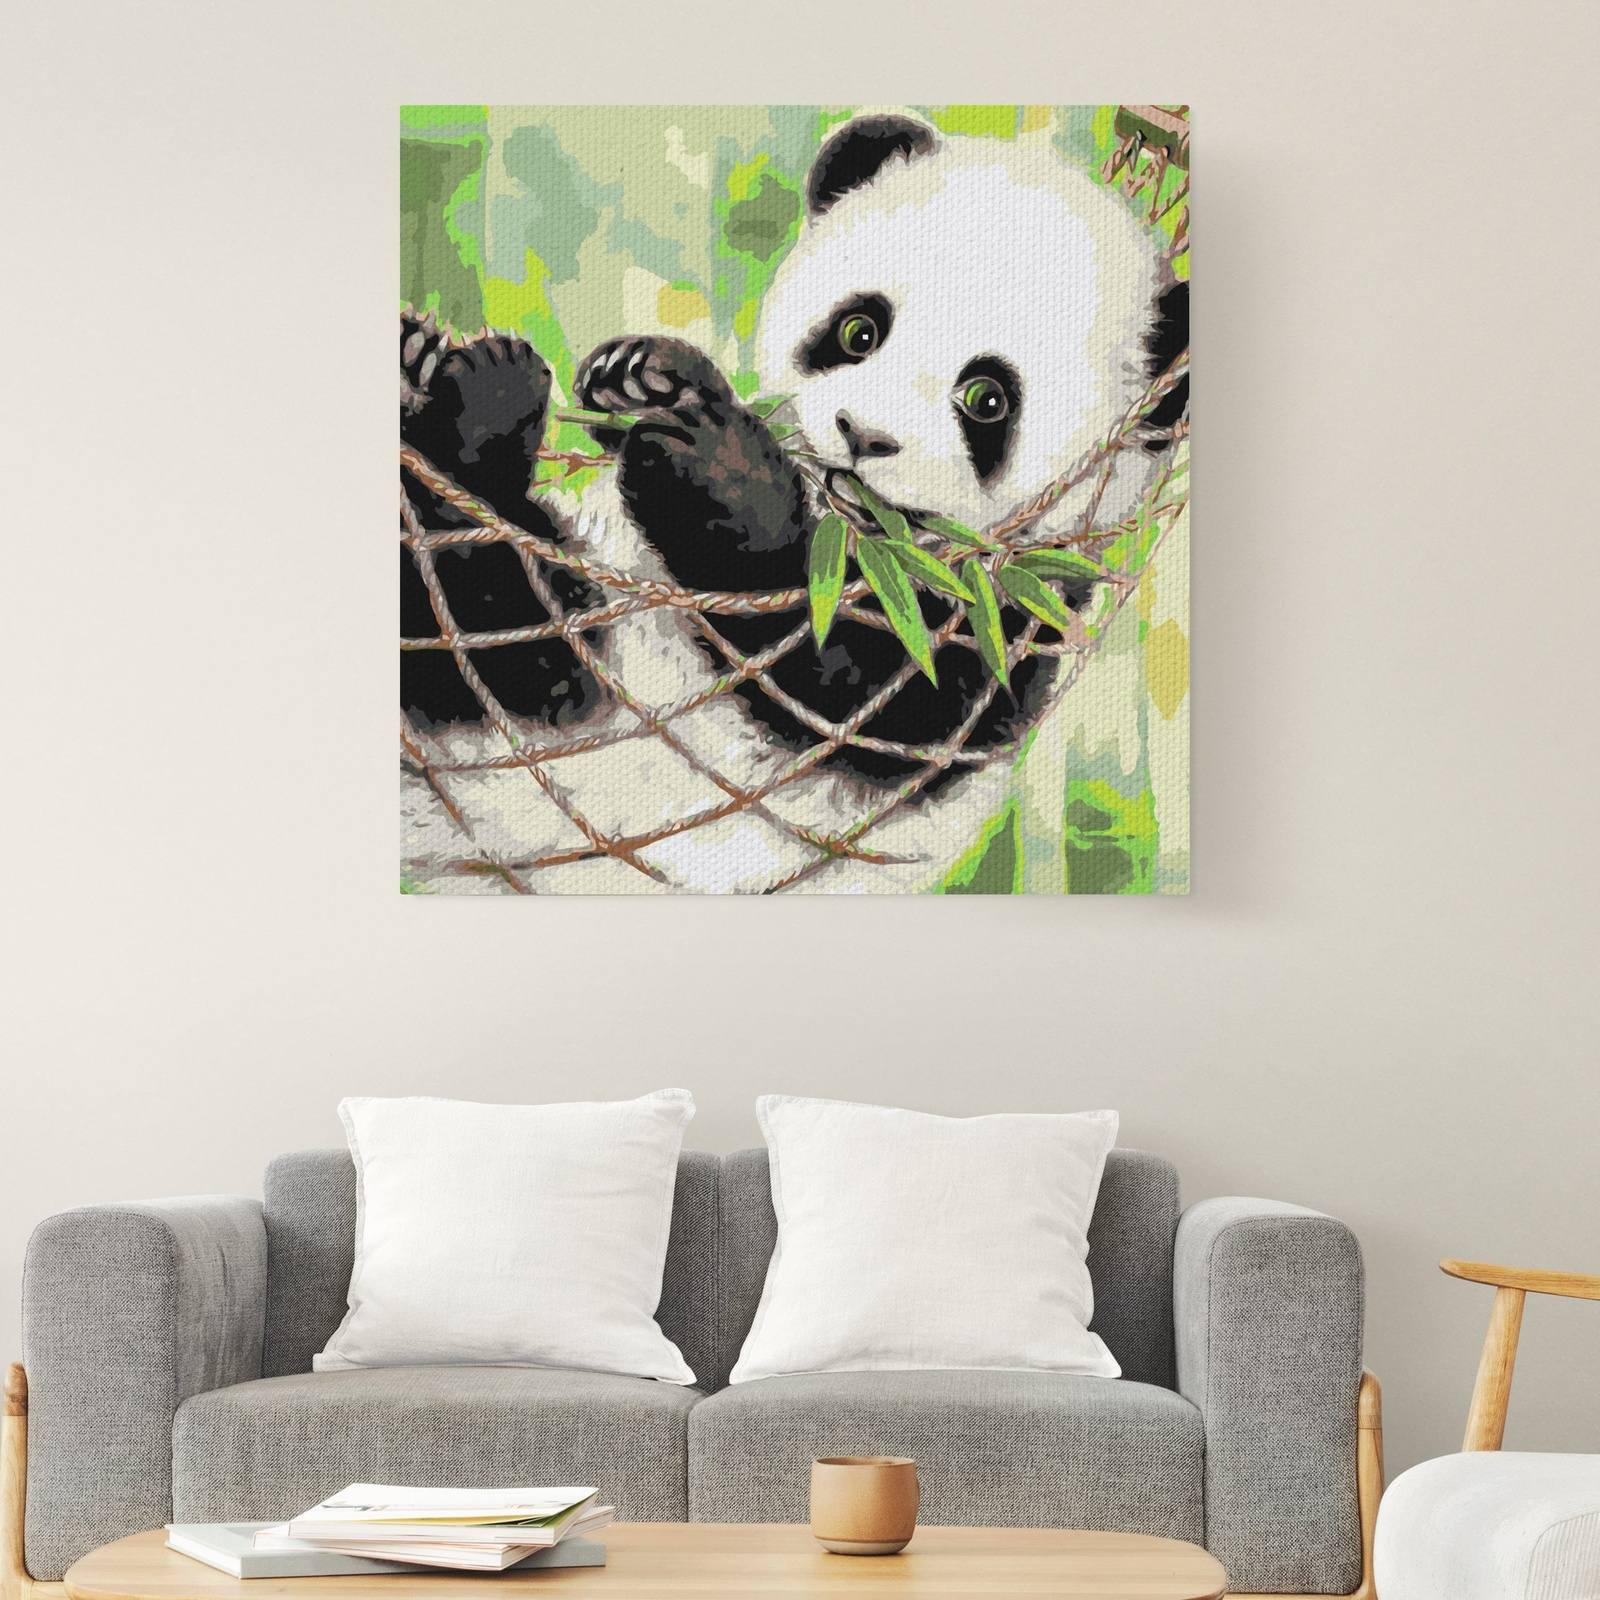 Netter Panda (CDC0171)